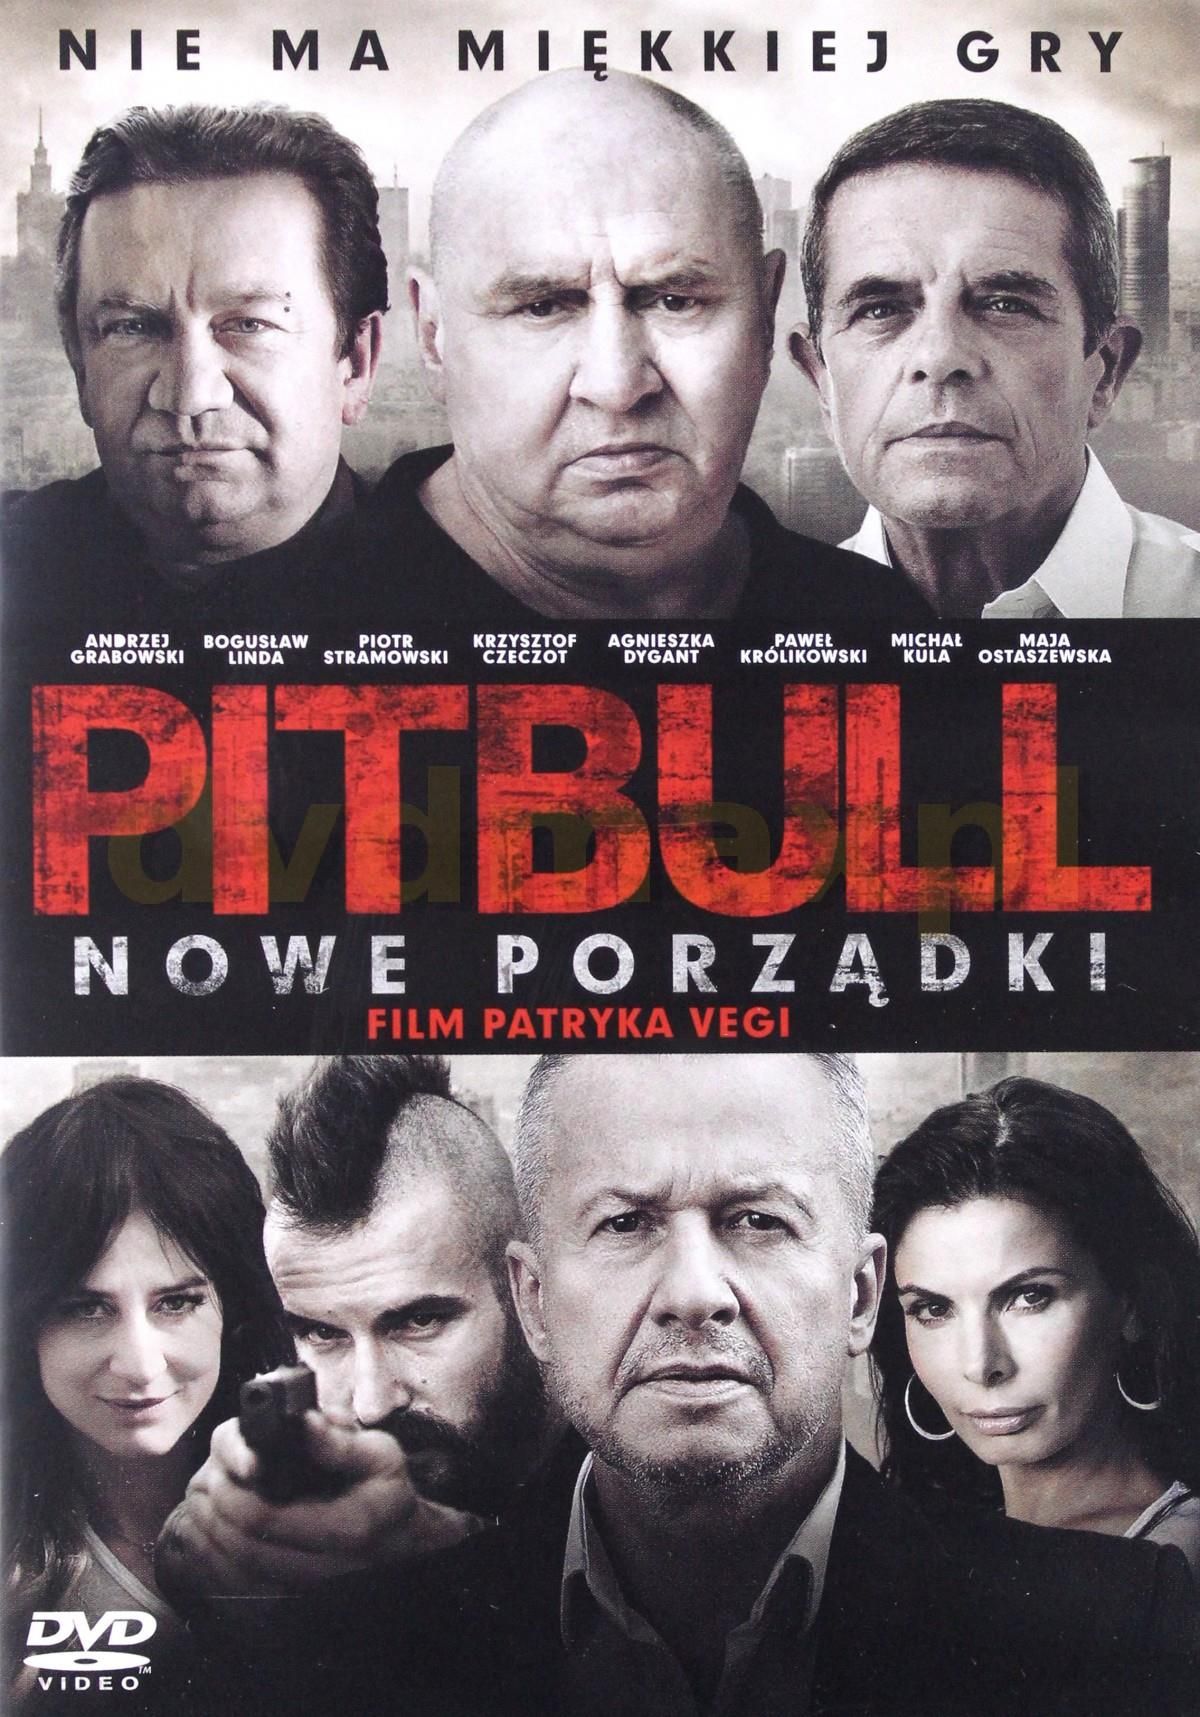 Film Dvd Pitbull Nowe Porzadki Dvd Ceny I Opinie Ceneo Pl